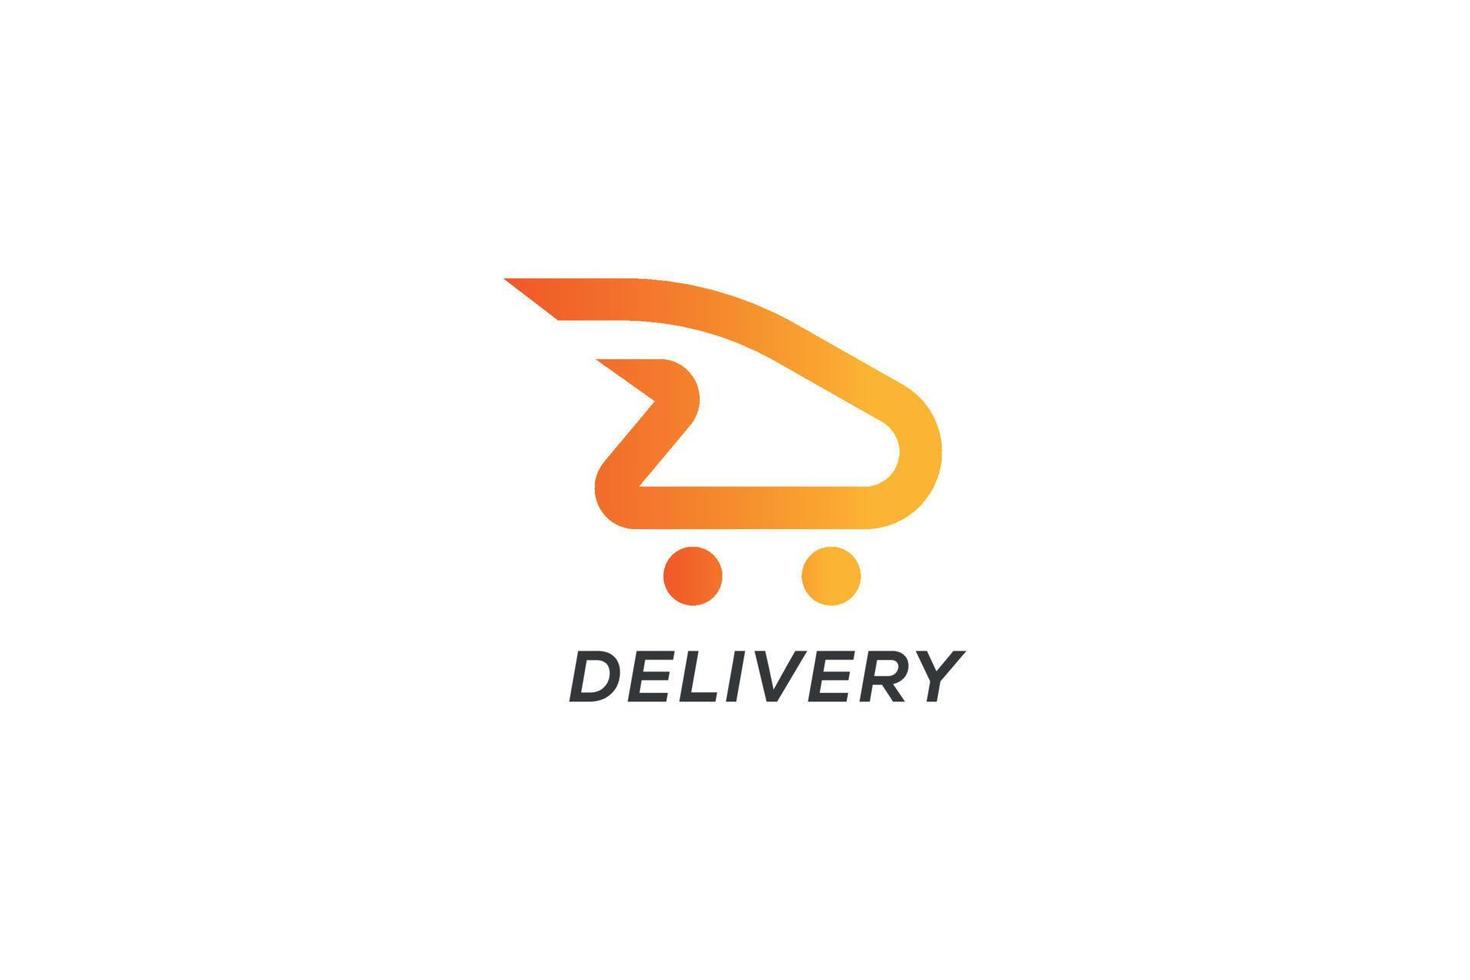 logo de livraison, logo d, logo d'achat, boutique en ligne, icône de livraison rapide, vecteur